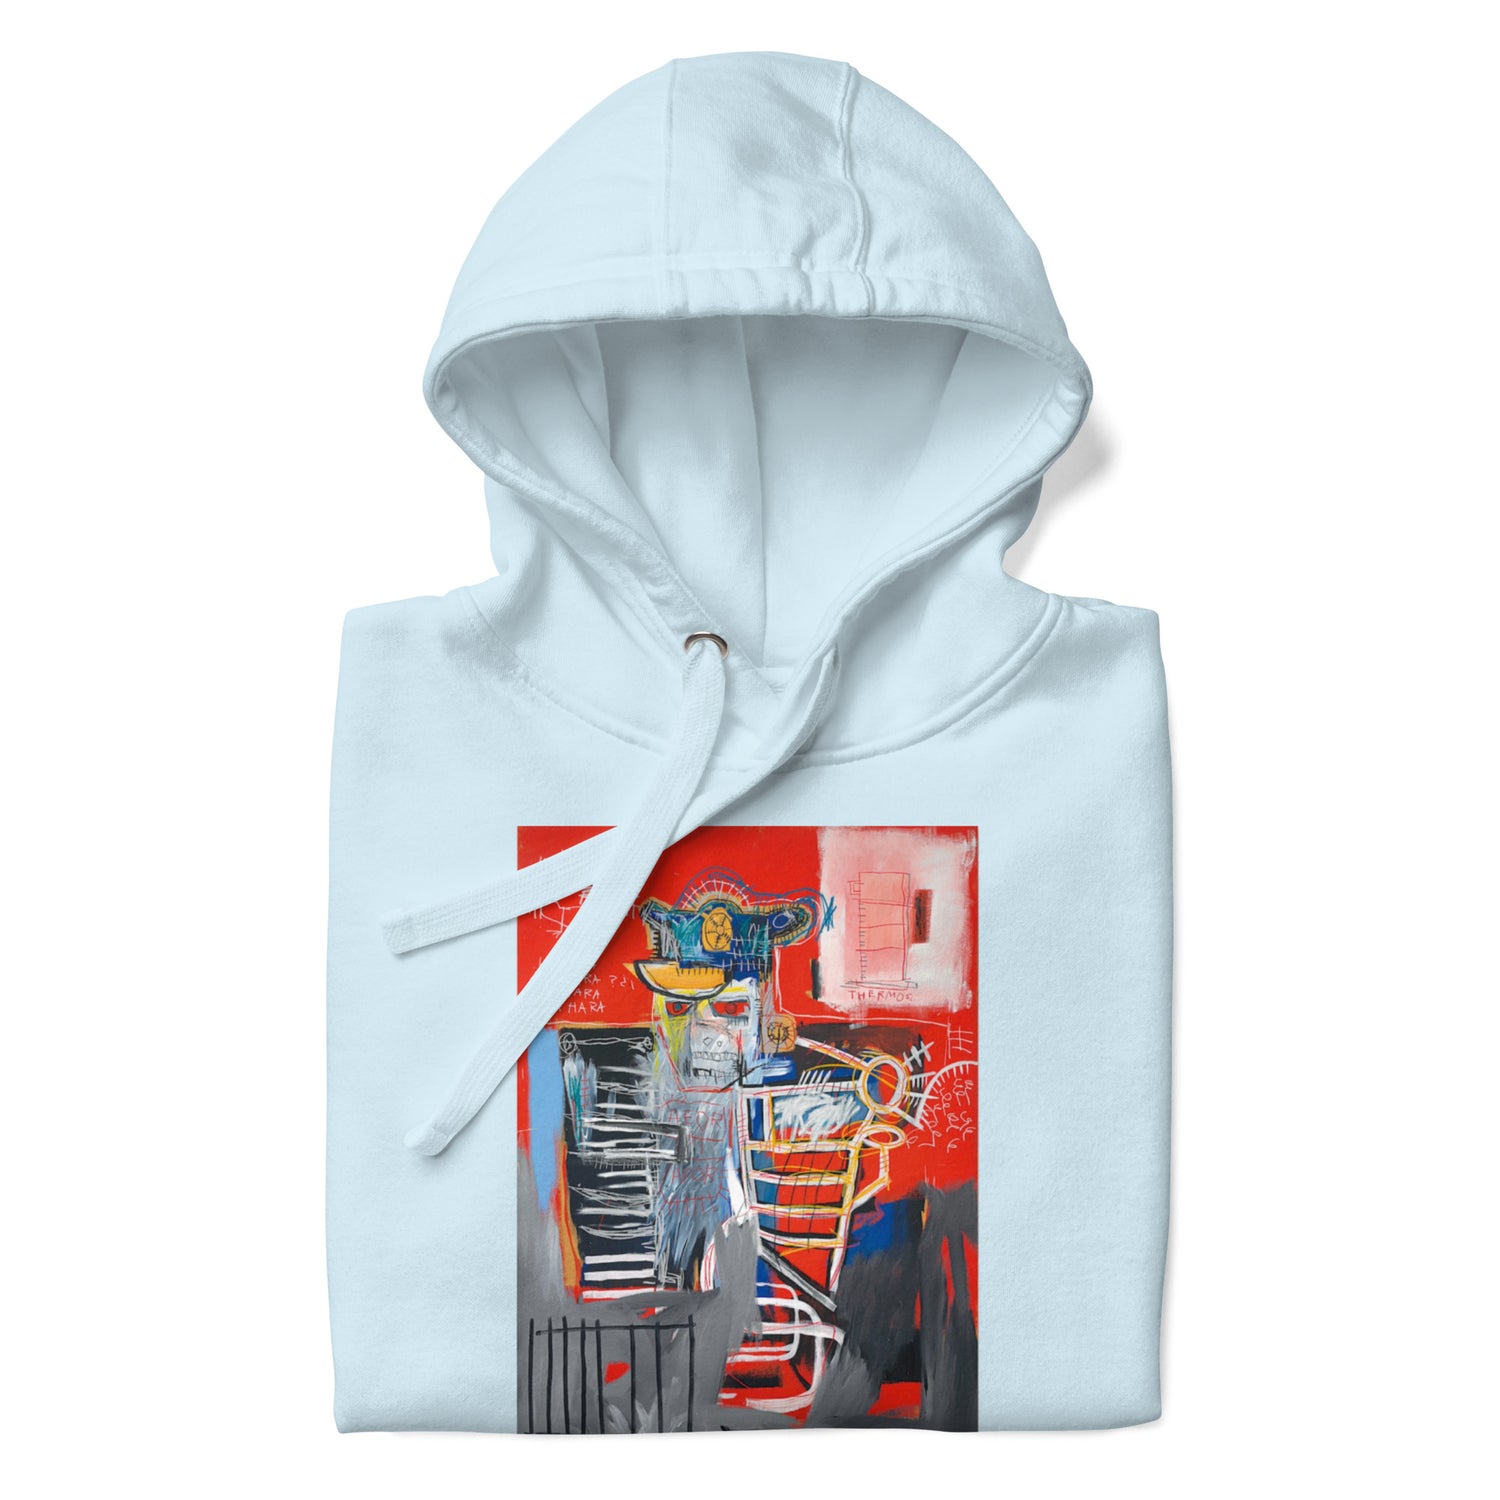 Jean-Michel Basquiat "La Hara" Artwork Printed Premium Streetwear Sweatshirt Hoodie Ice Blue